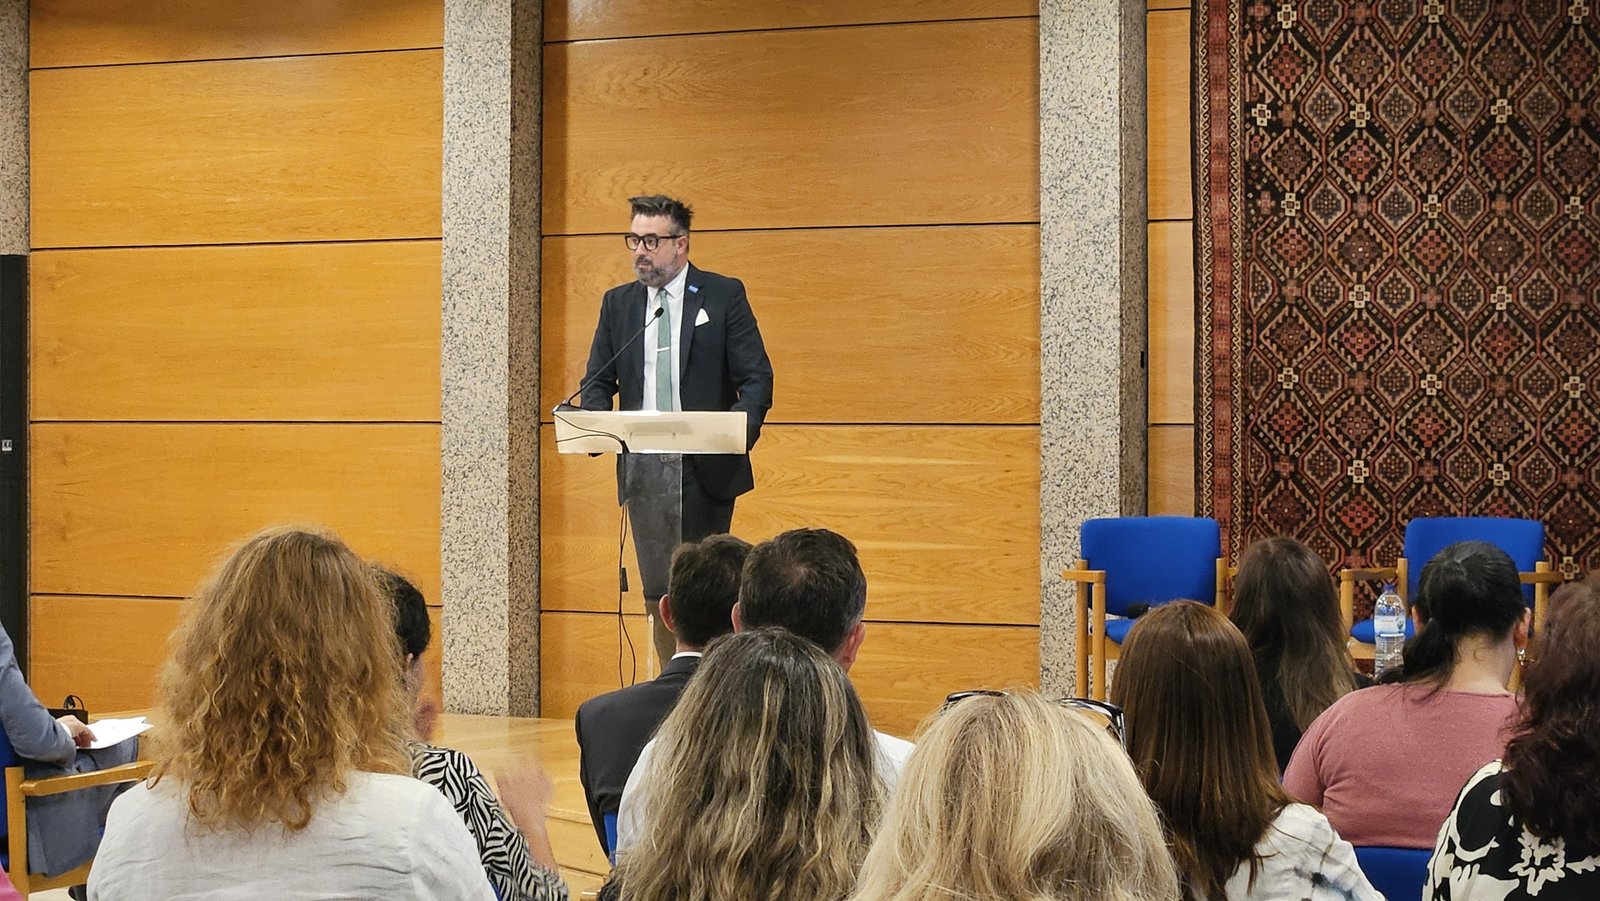 Vasco Malta, Chefe de Missão da OIM, durante a apresentação do Plano de Migração Laboral no Centro Ismaili de Lisboa. Crédito: Stefani Costa/BrasilJá